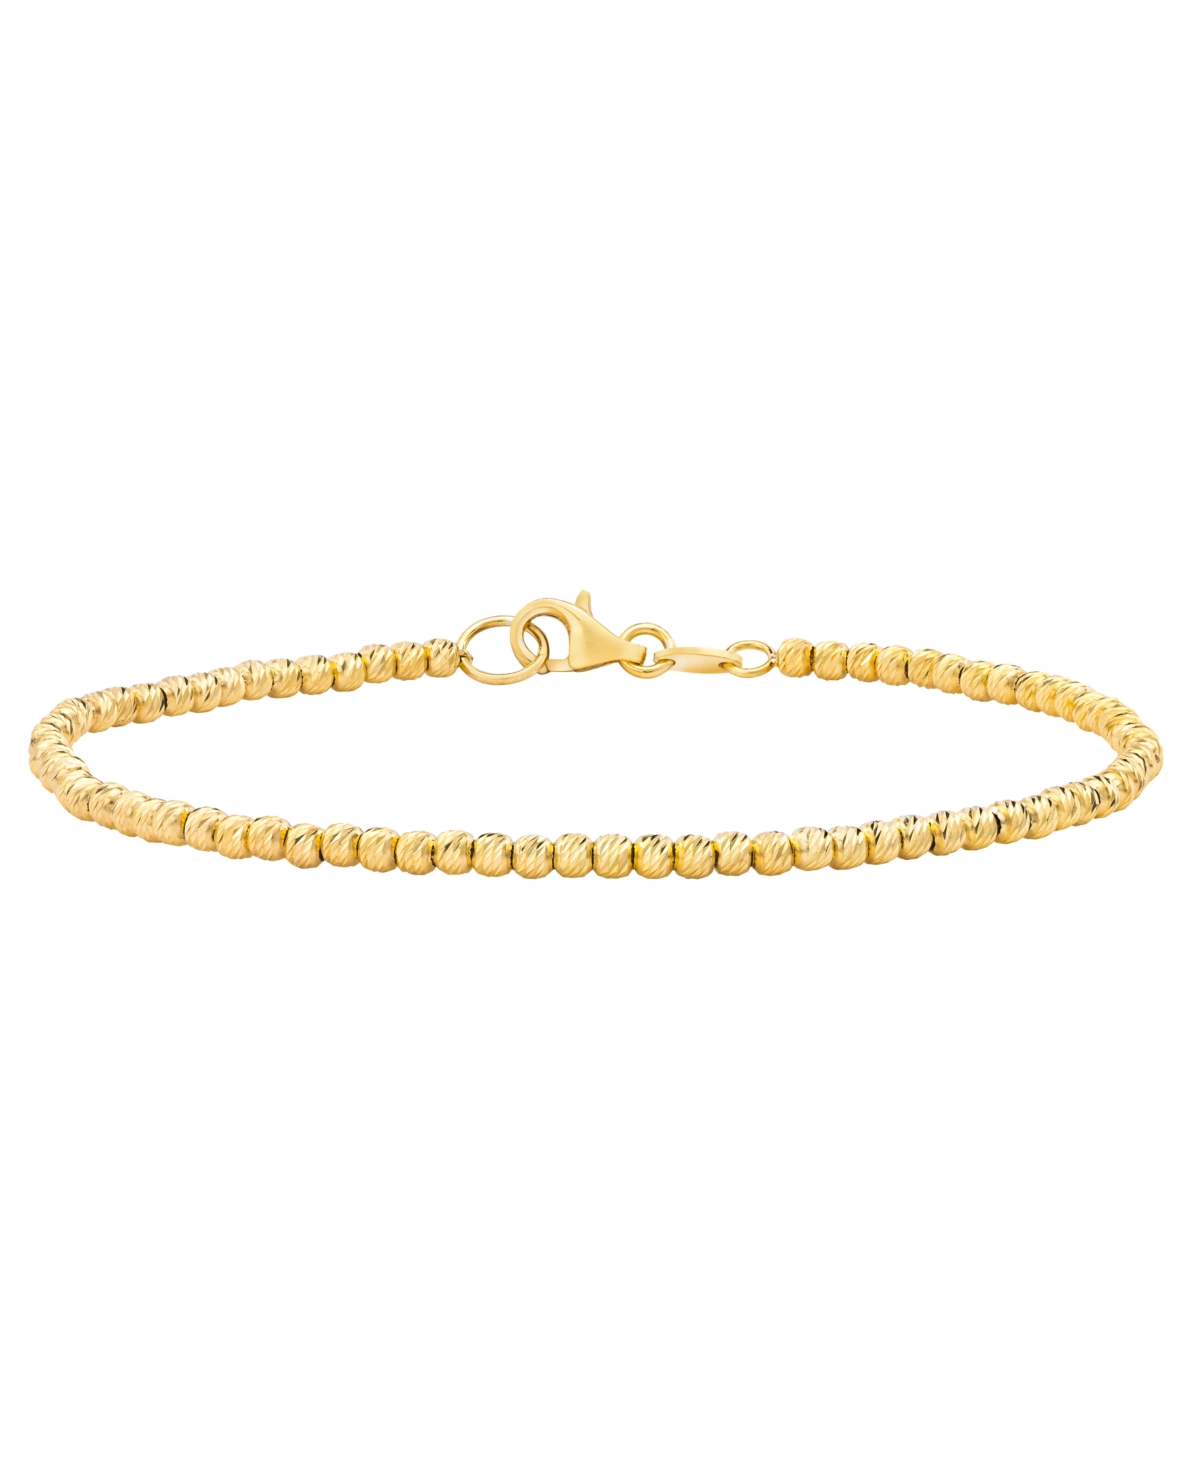 Beaded Bracelet in 14k Gold - Yellow Gold